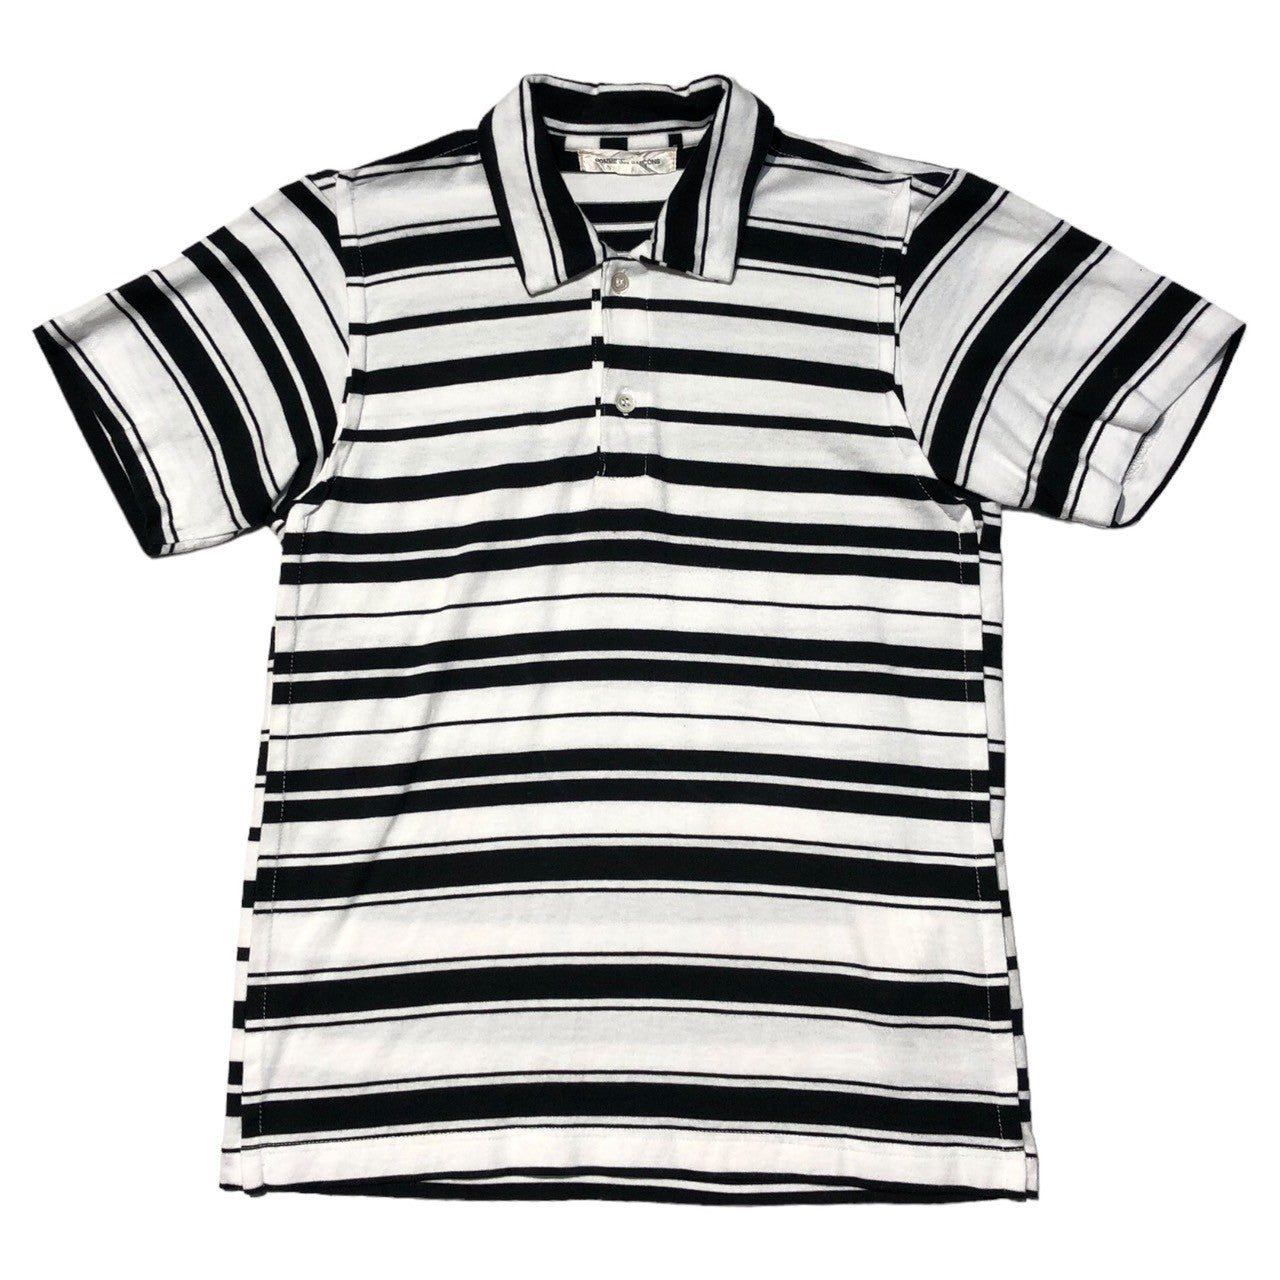 COMME des GARCONS(コムデギャルソン) 03SS  border polo shirt ボーダー ポロシャツ GI-T049 表記無し(S程度) ホワイト×ブラック AD2002